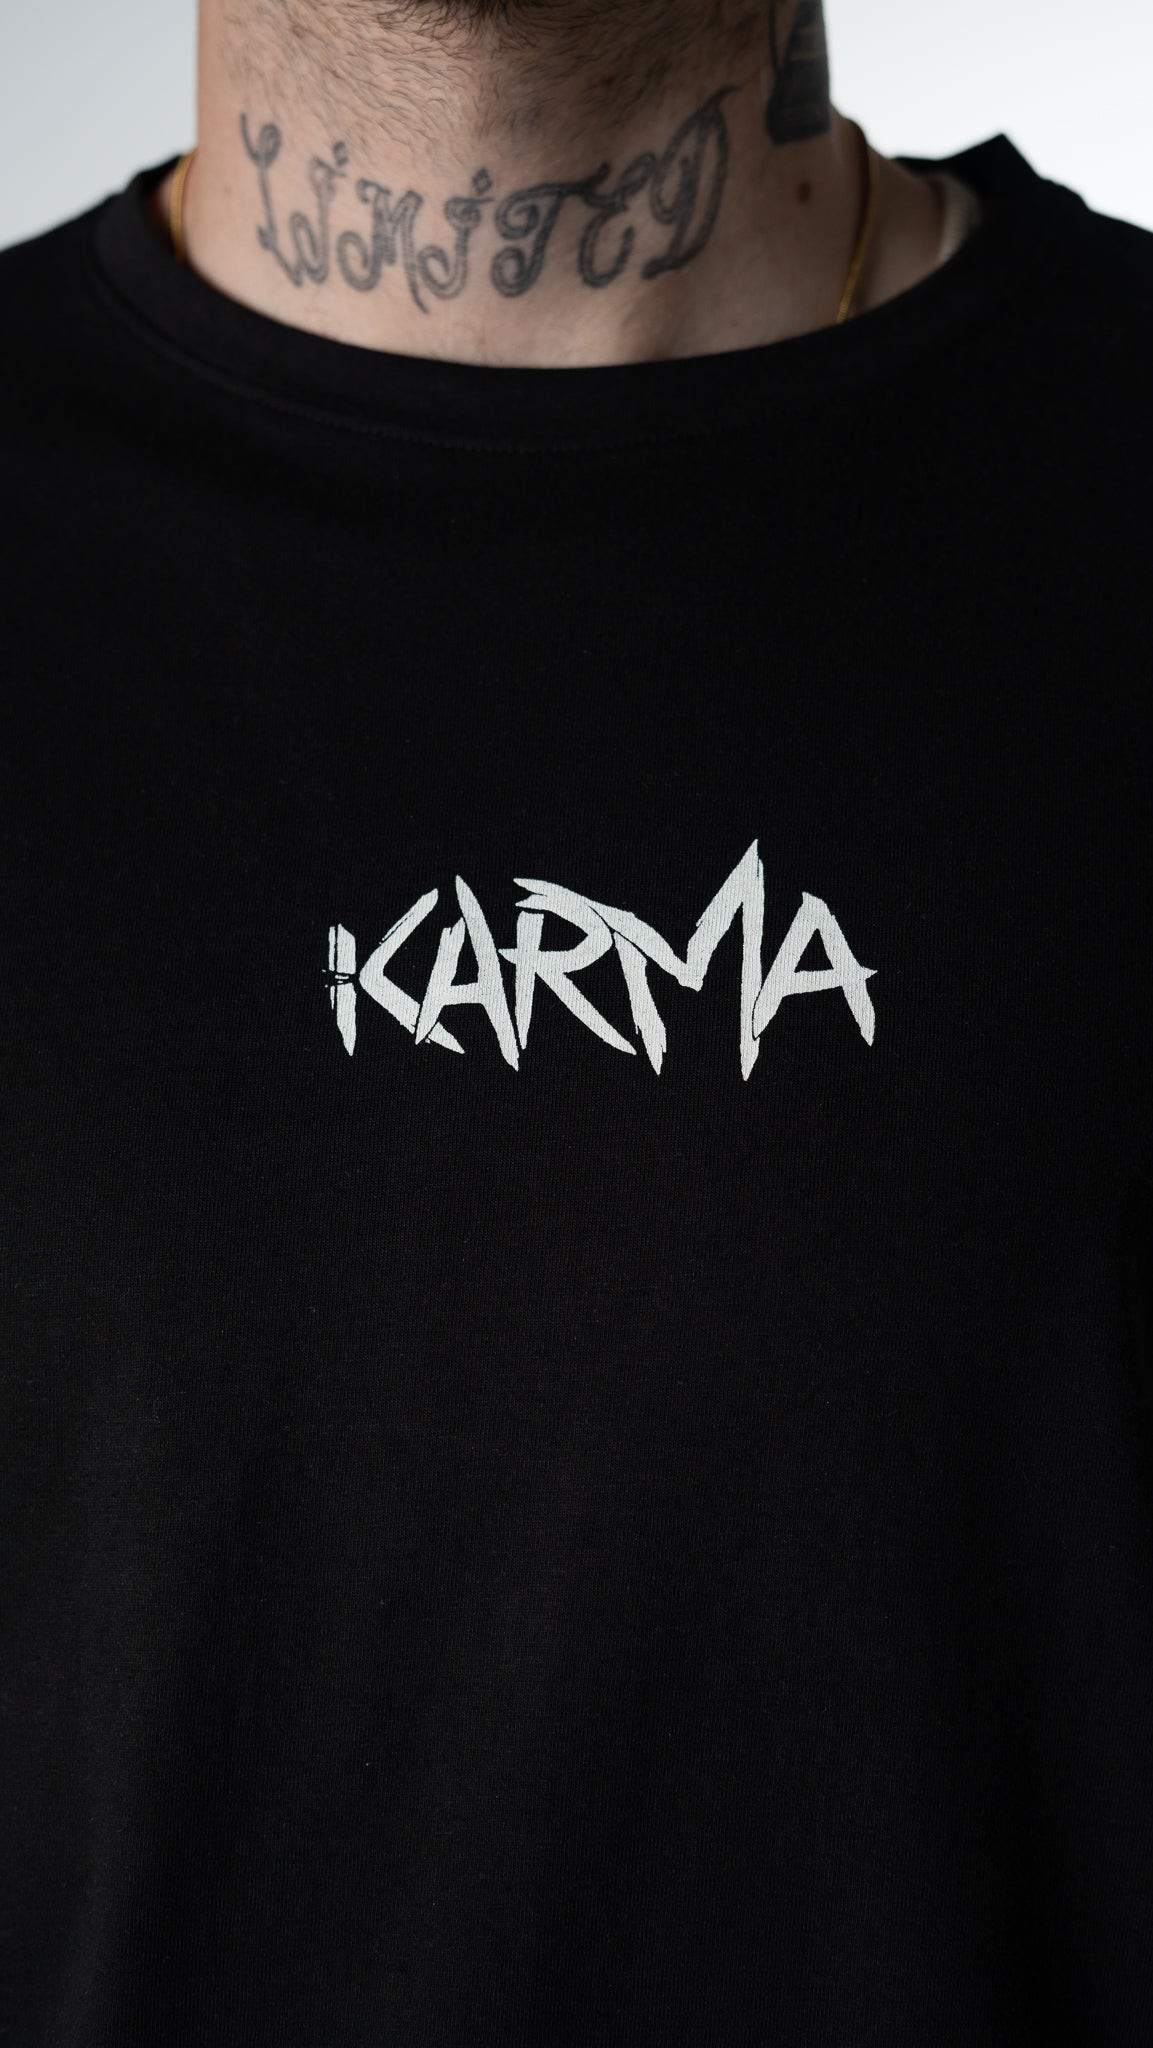 Karma Limited Edition Siyah Tişört